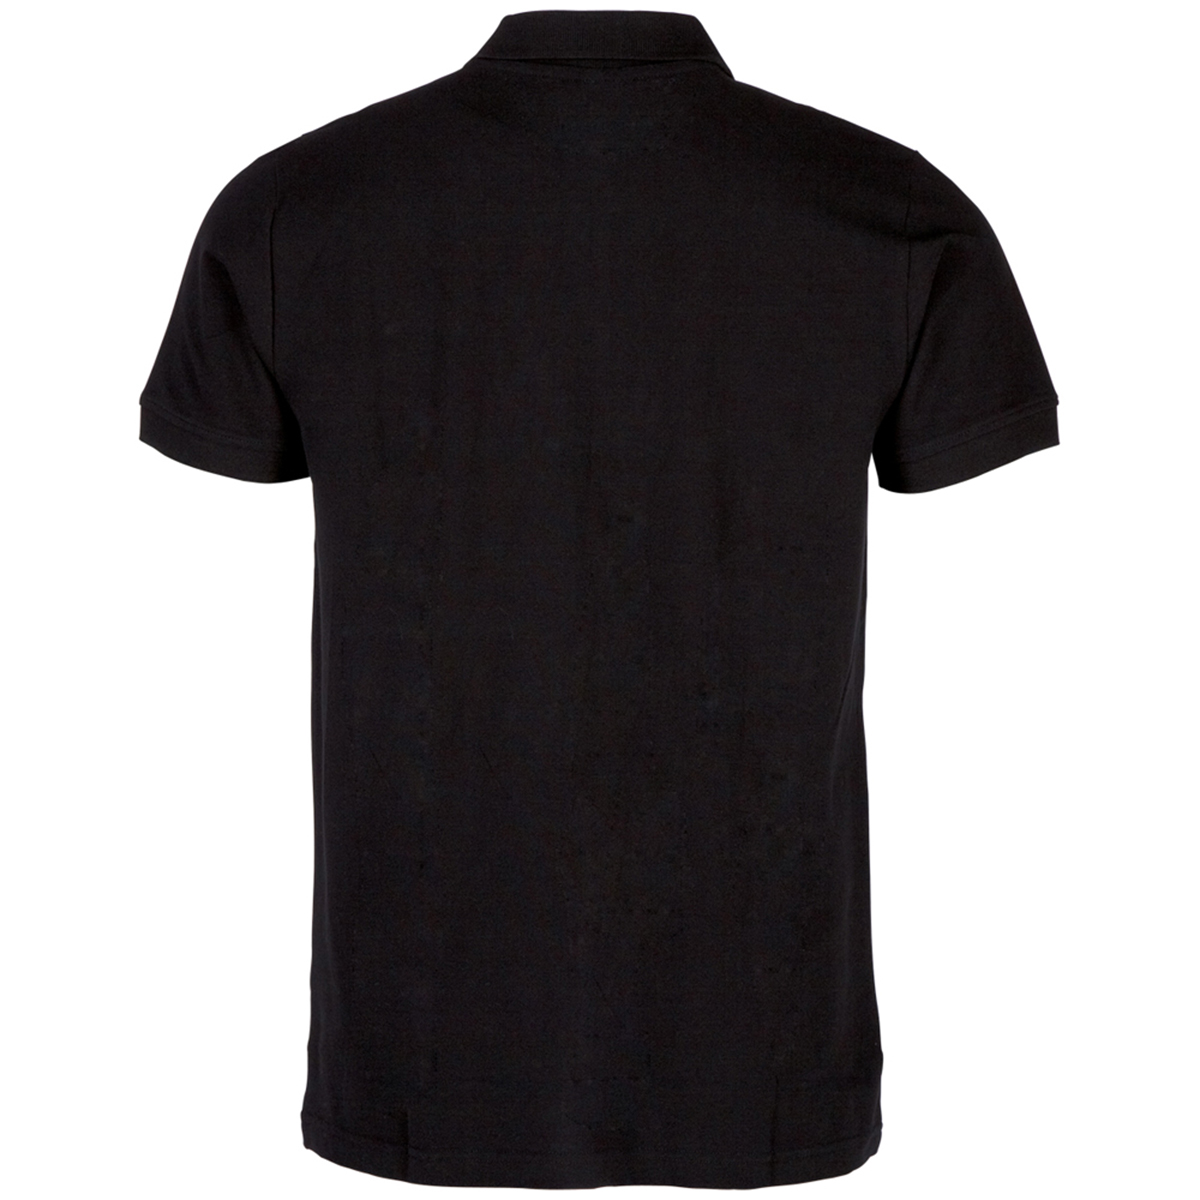 Kappa Unisex Polo Shirt Damen Herren 303173 schwarz